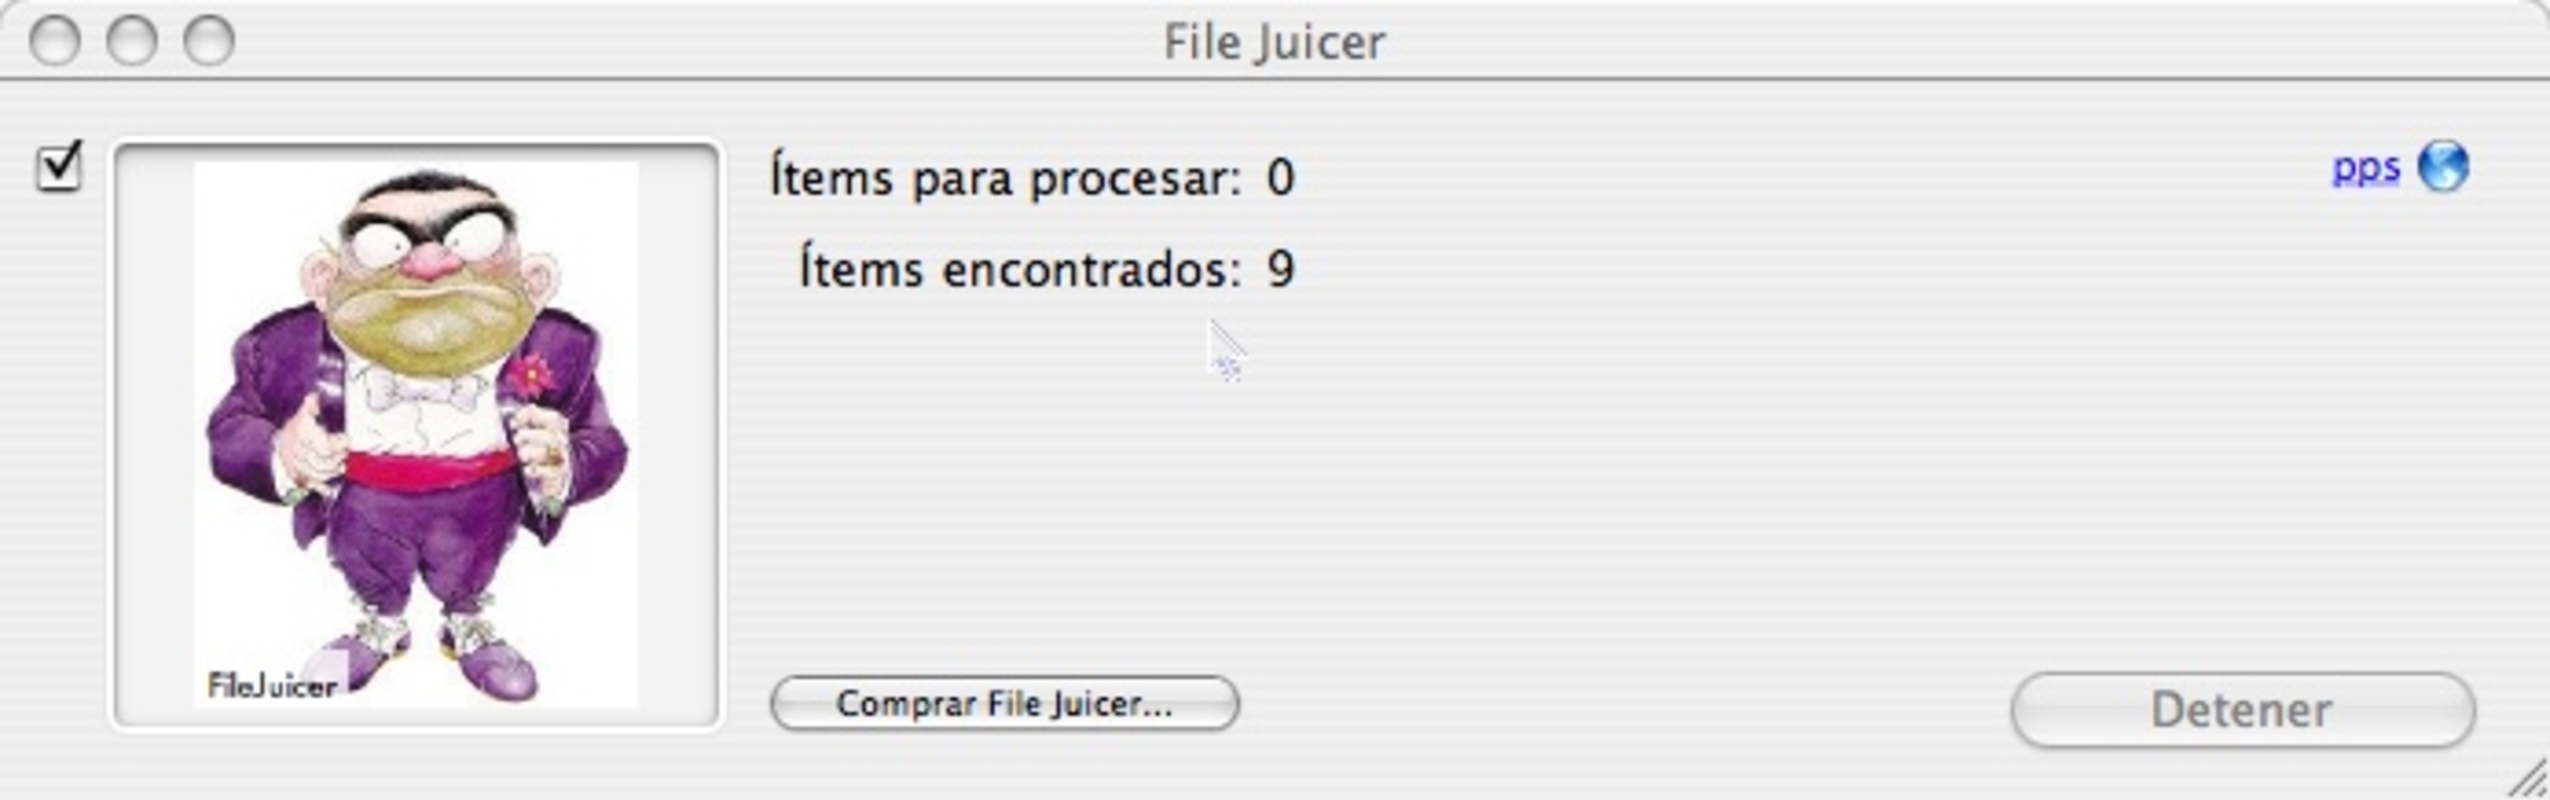 File Juicer 4.87 for Mac Screenshot 2